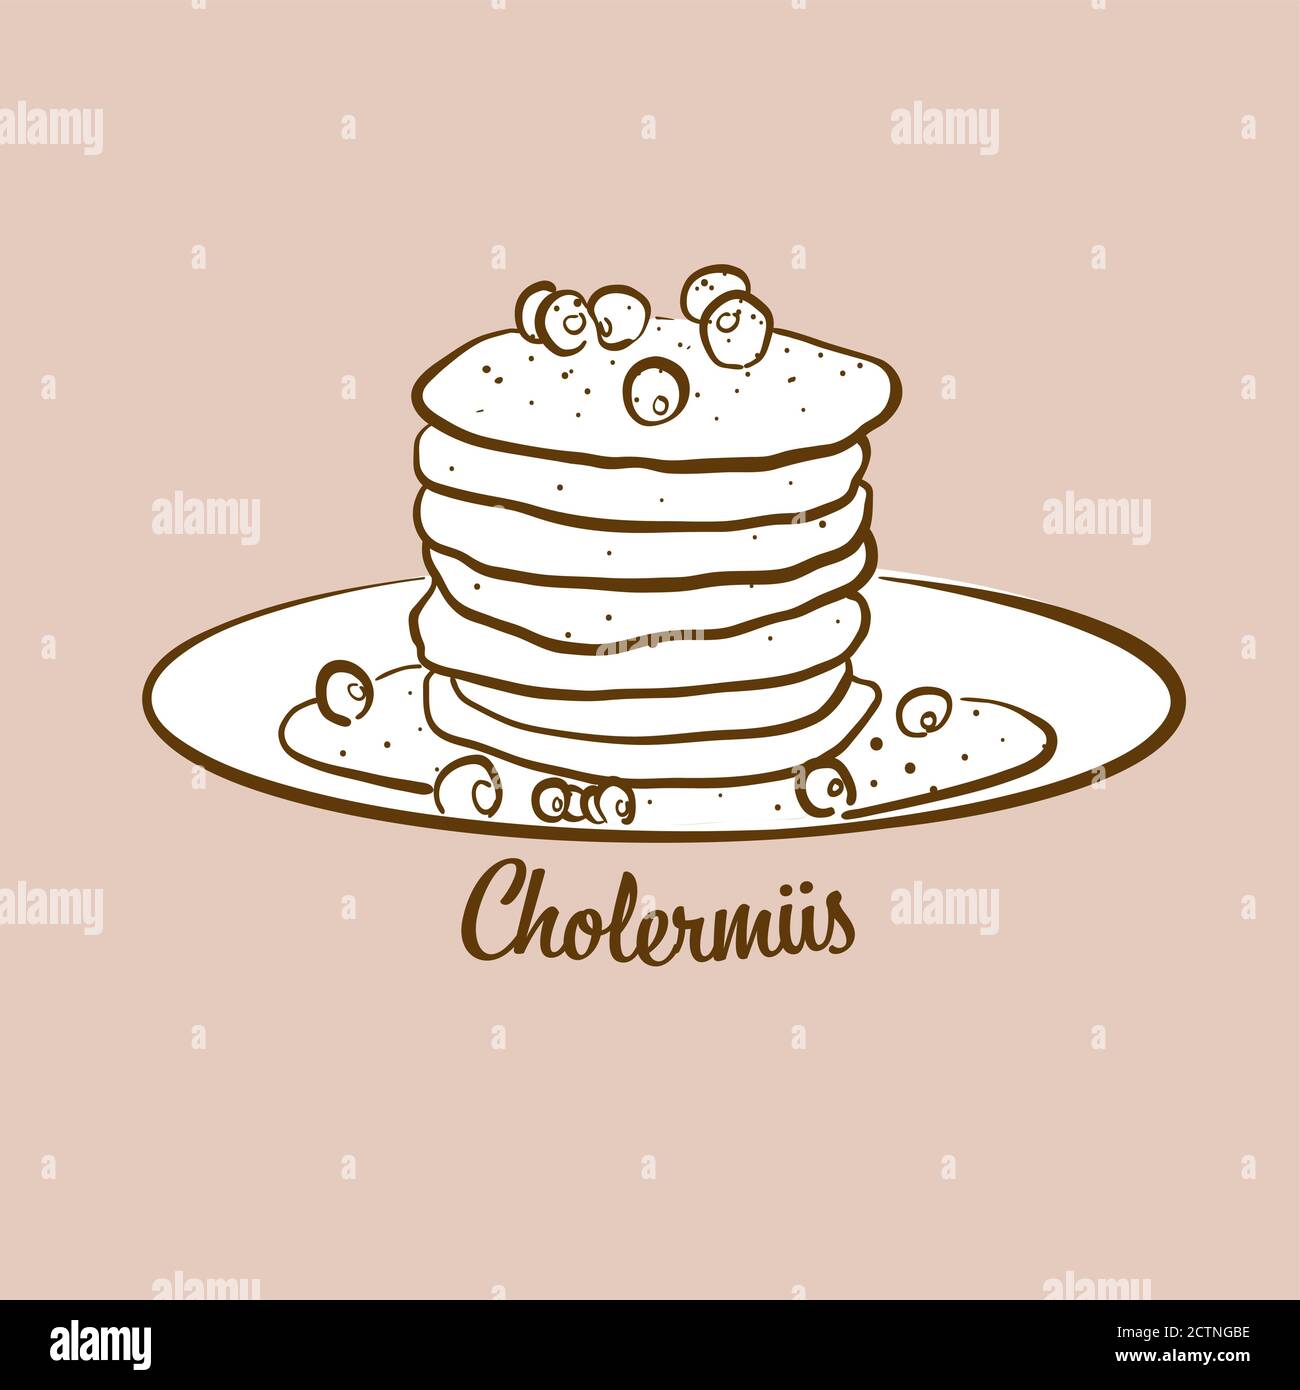 Illustration de pain Cholermues dessiné à la main. Crêpe, généralement connue en Suisse. Série de mises en plan vectorielles. Illustration de Vecteur